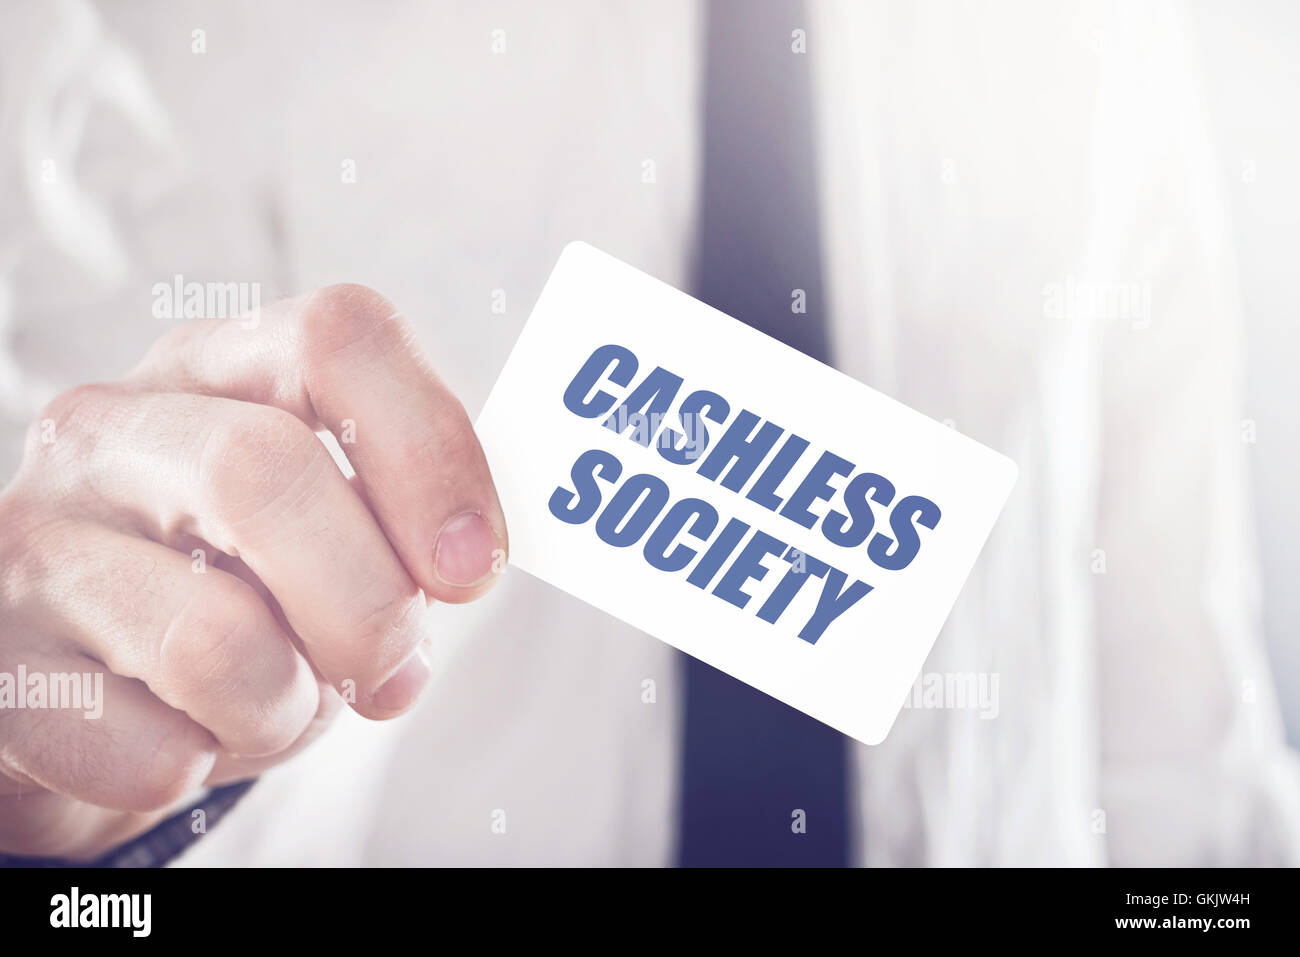 Businessman holding card avec la société sans espèces titre, concept de la promotion des paiements électroniques et mobiles sans interdiction d'argent Banque D'Images